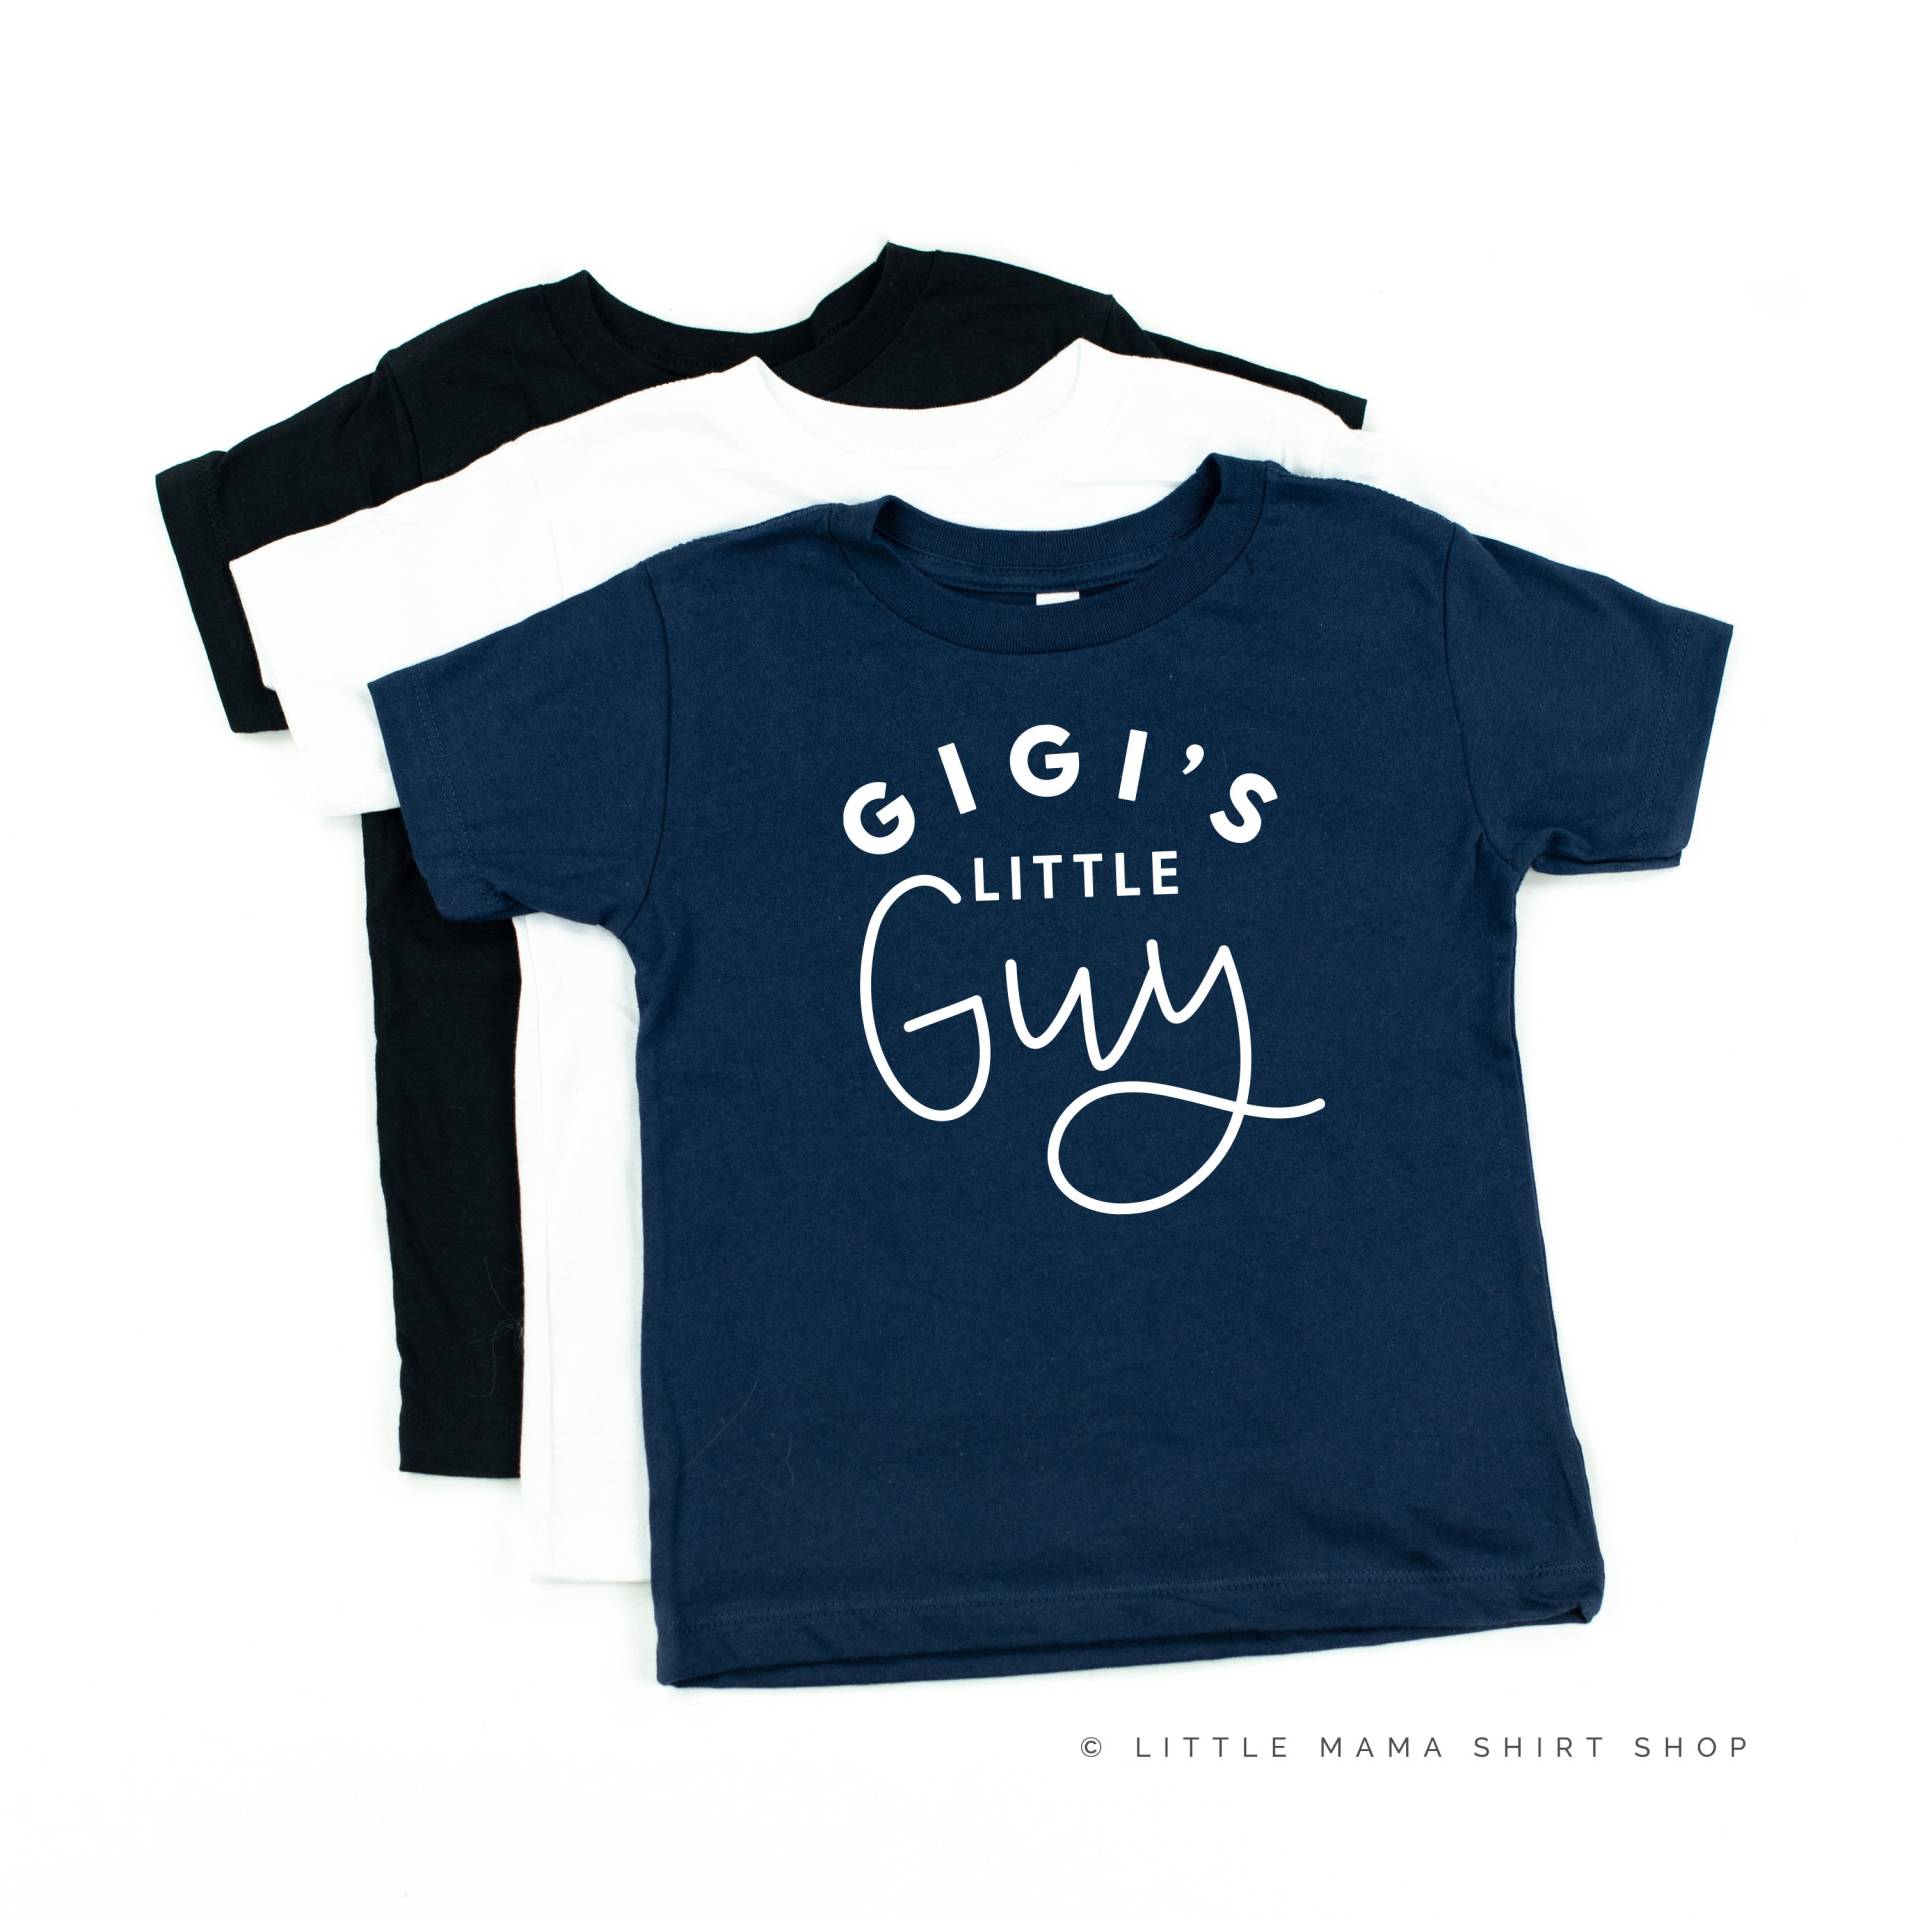 Gigi Es Little Guy | Kleinkind Junge Shirt Shirts Für Kleine Jungs Baby Omas von LittleMamaShirtShop